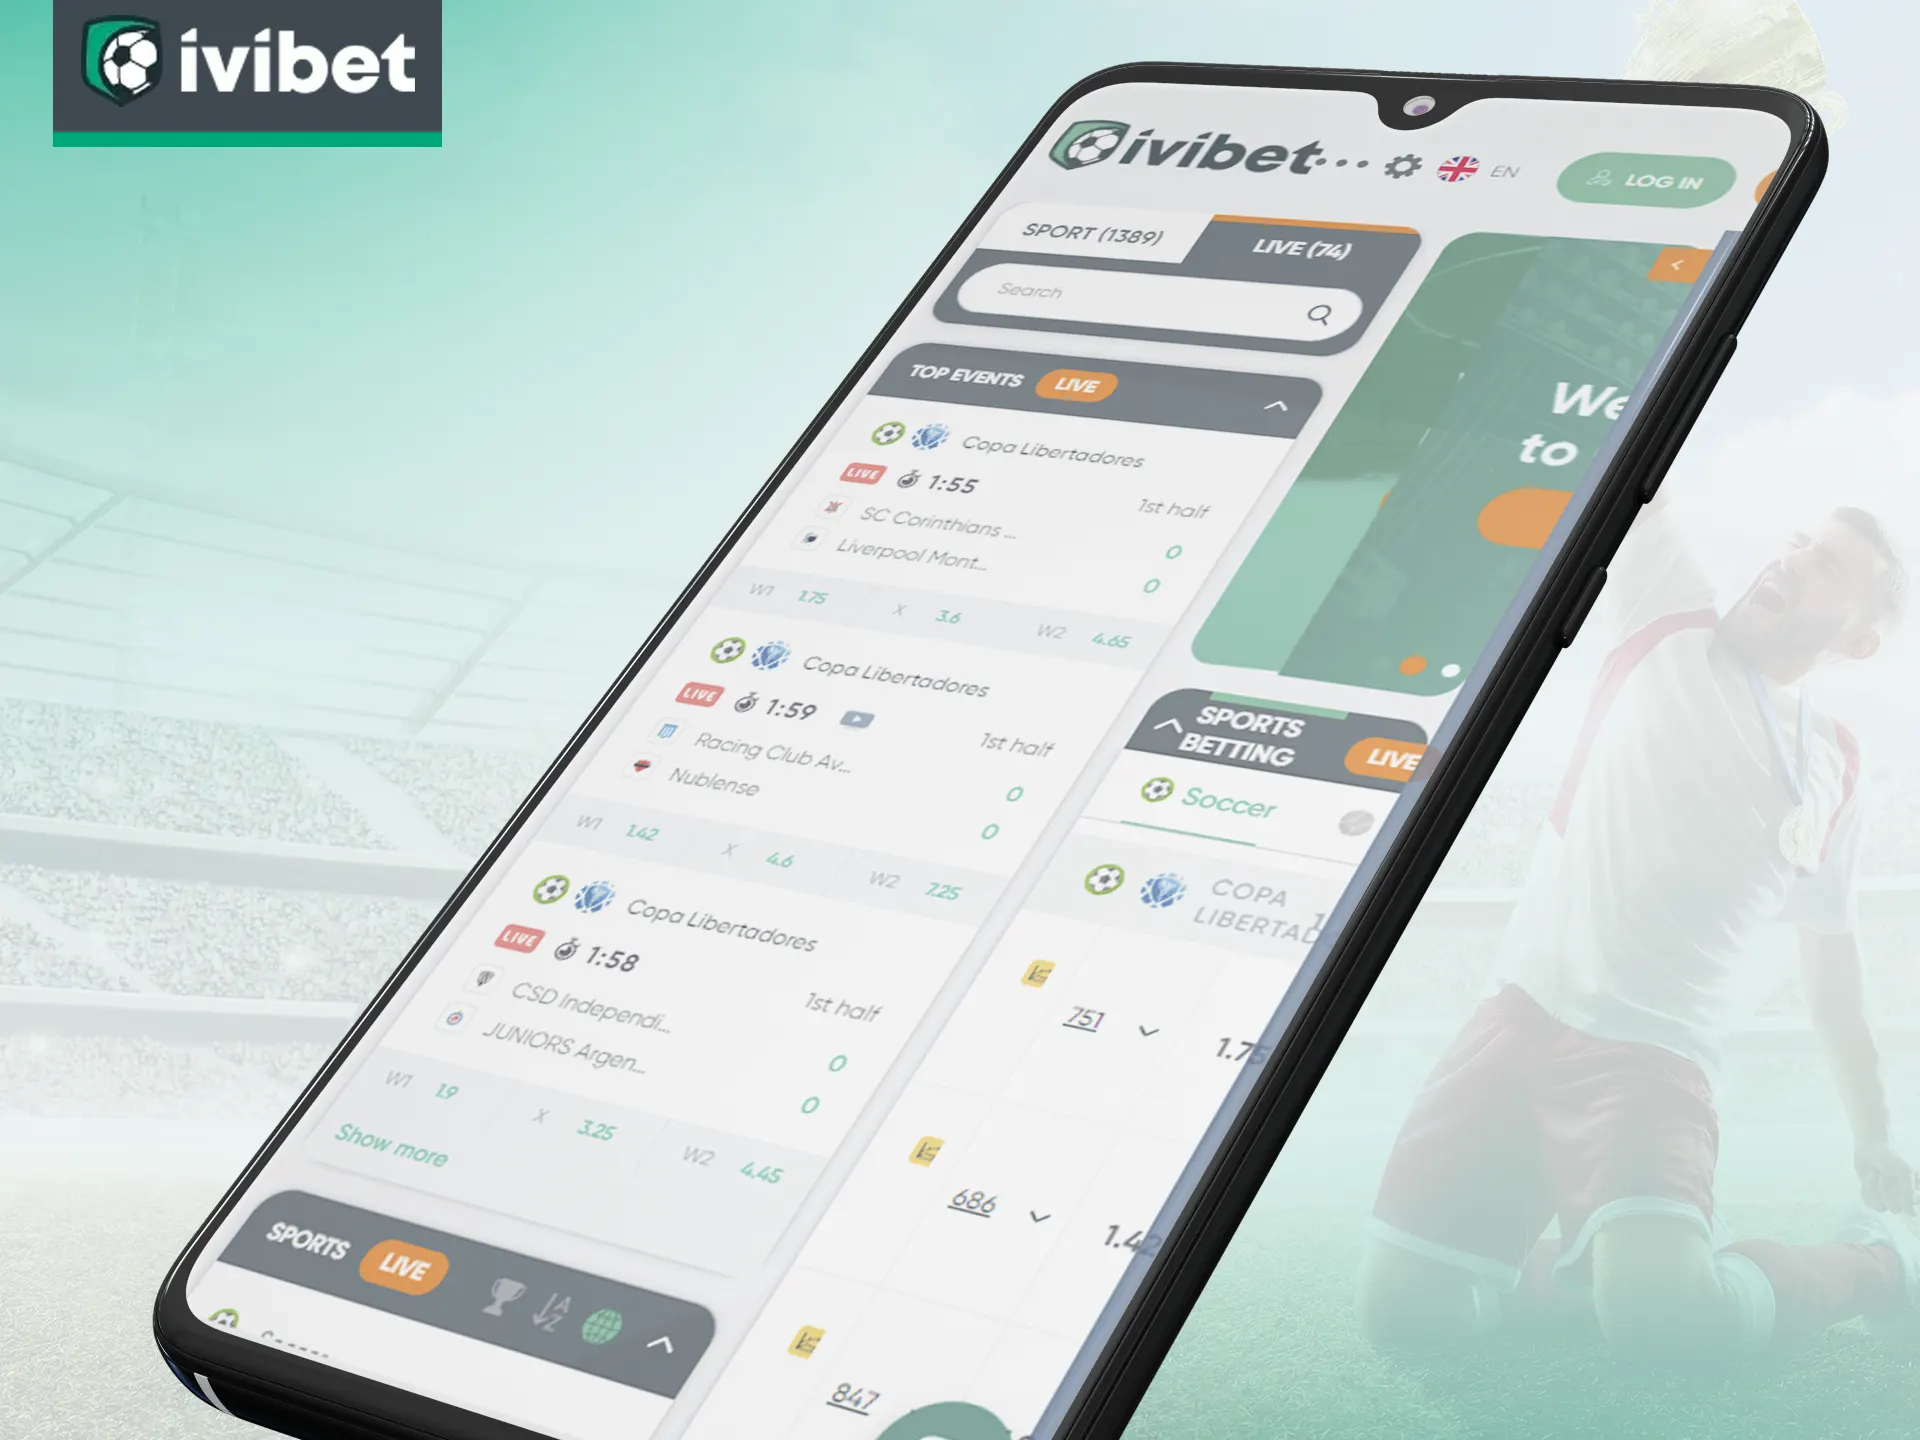 Jogue cassino e apostas esportivas com a Ivibet por meio da versão móvel do site.